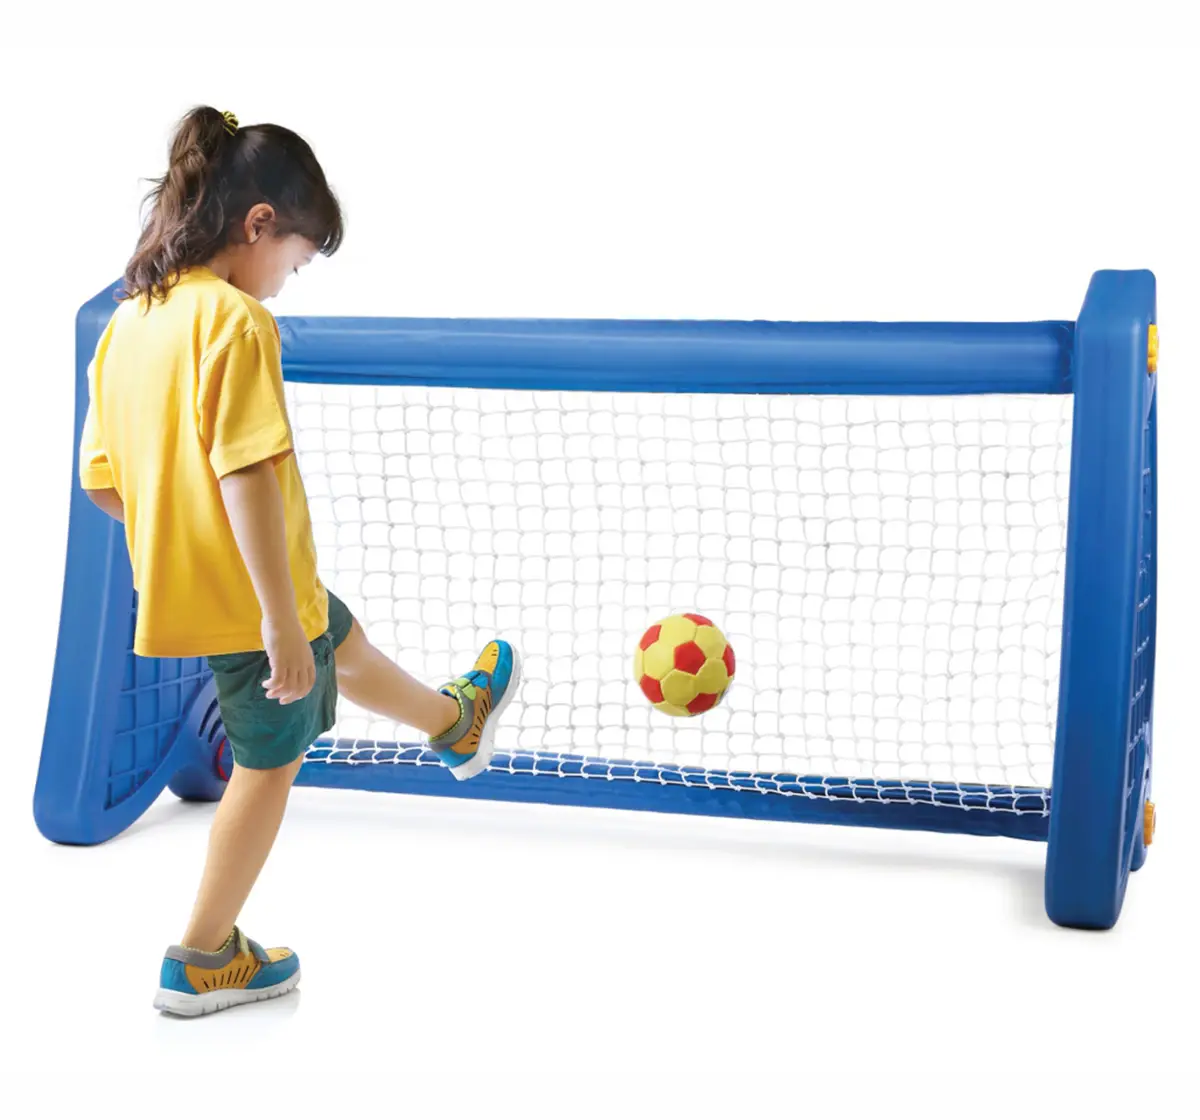 Ok Play Goal Post Plastic Soccer Goal Post for Kids Blue 3Y+